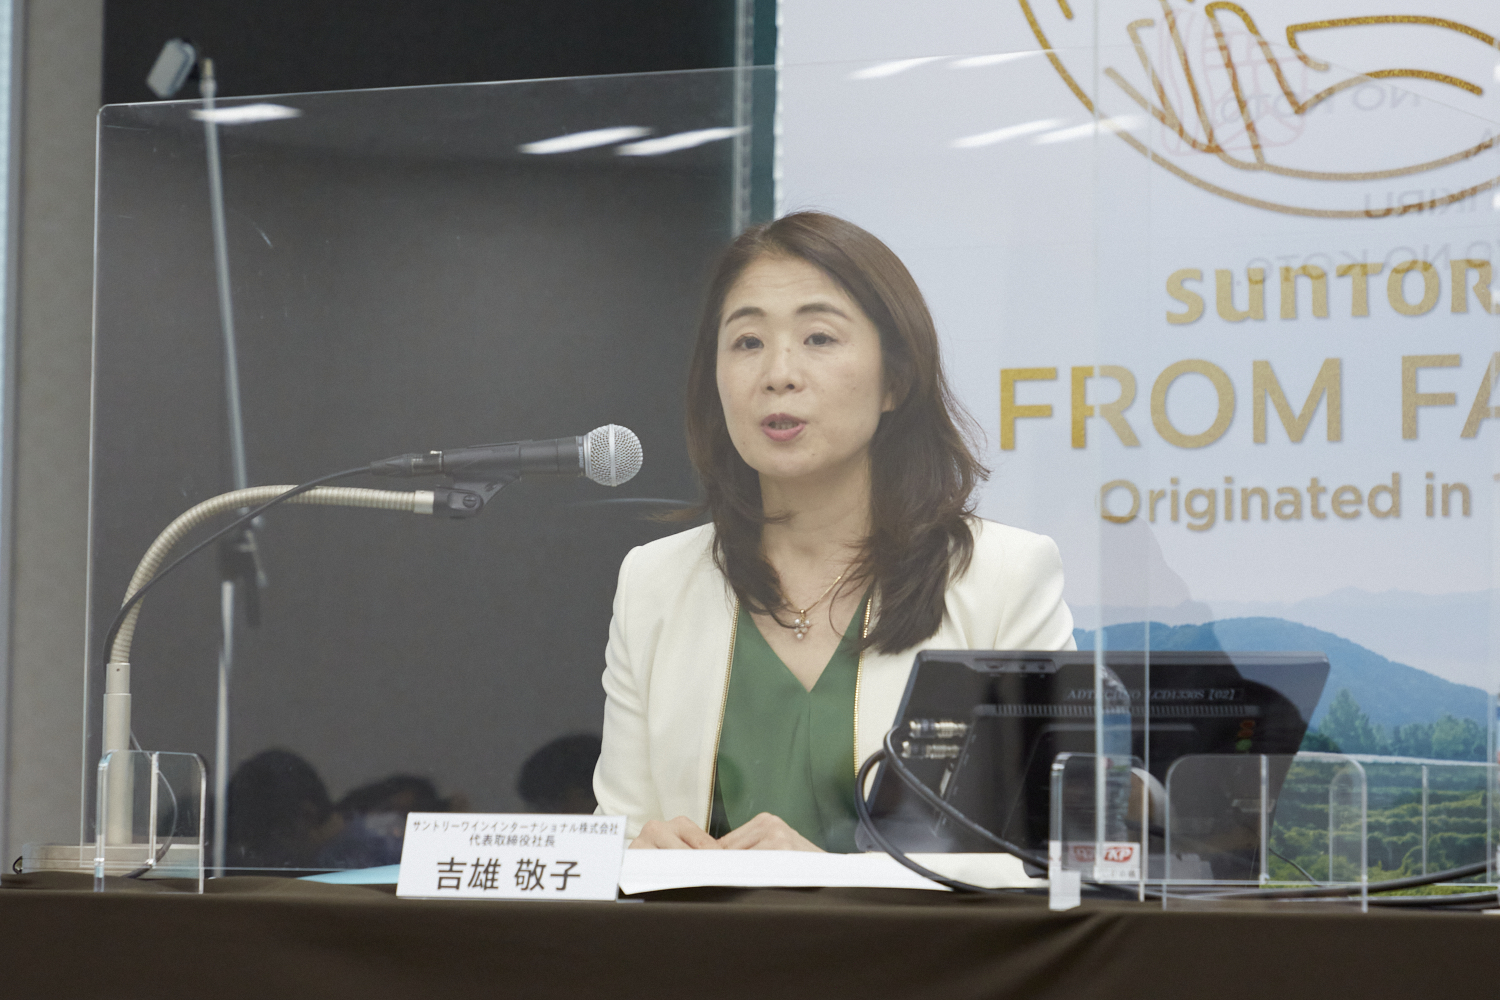 「ワイナリーには物語がある」と話すサントリーワインインターナショナルの吉雄敬子社長。